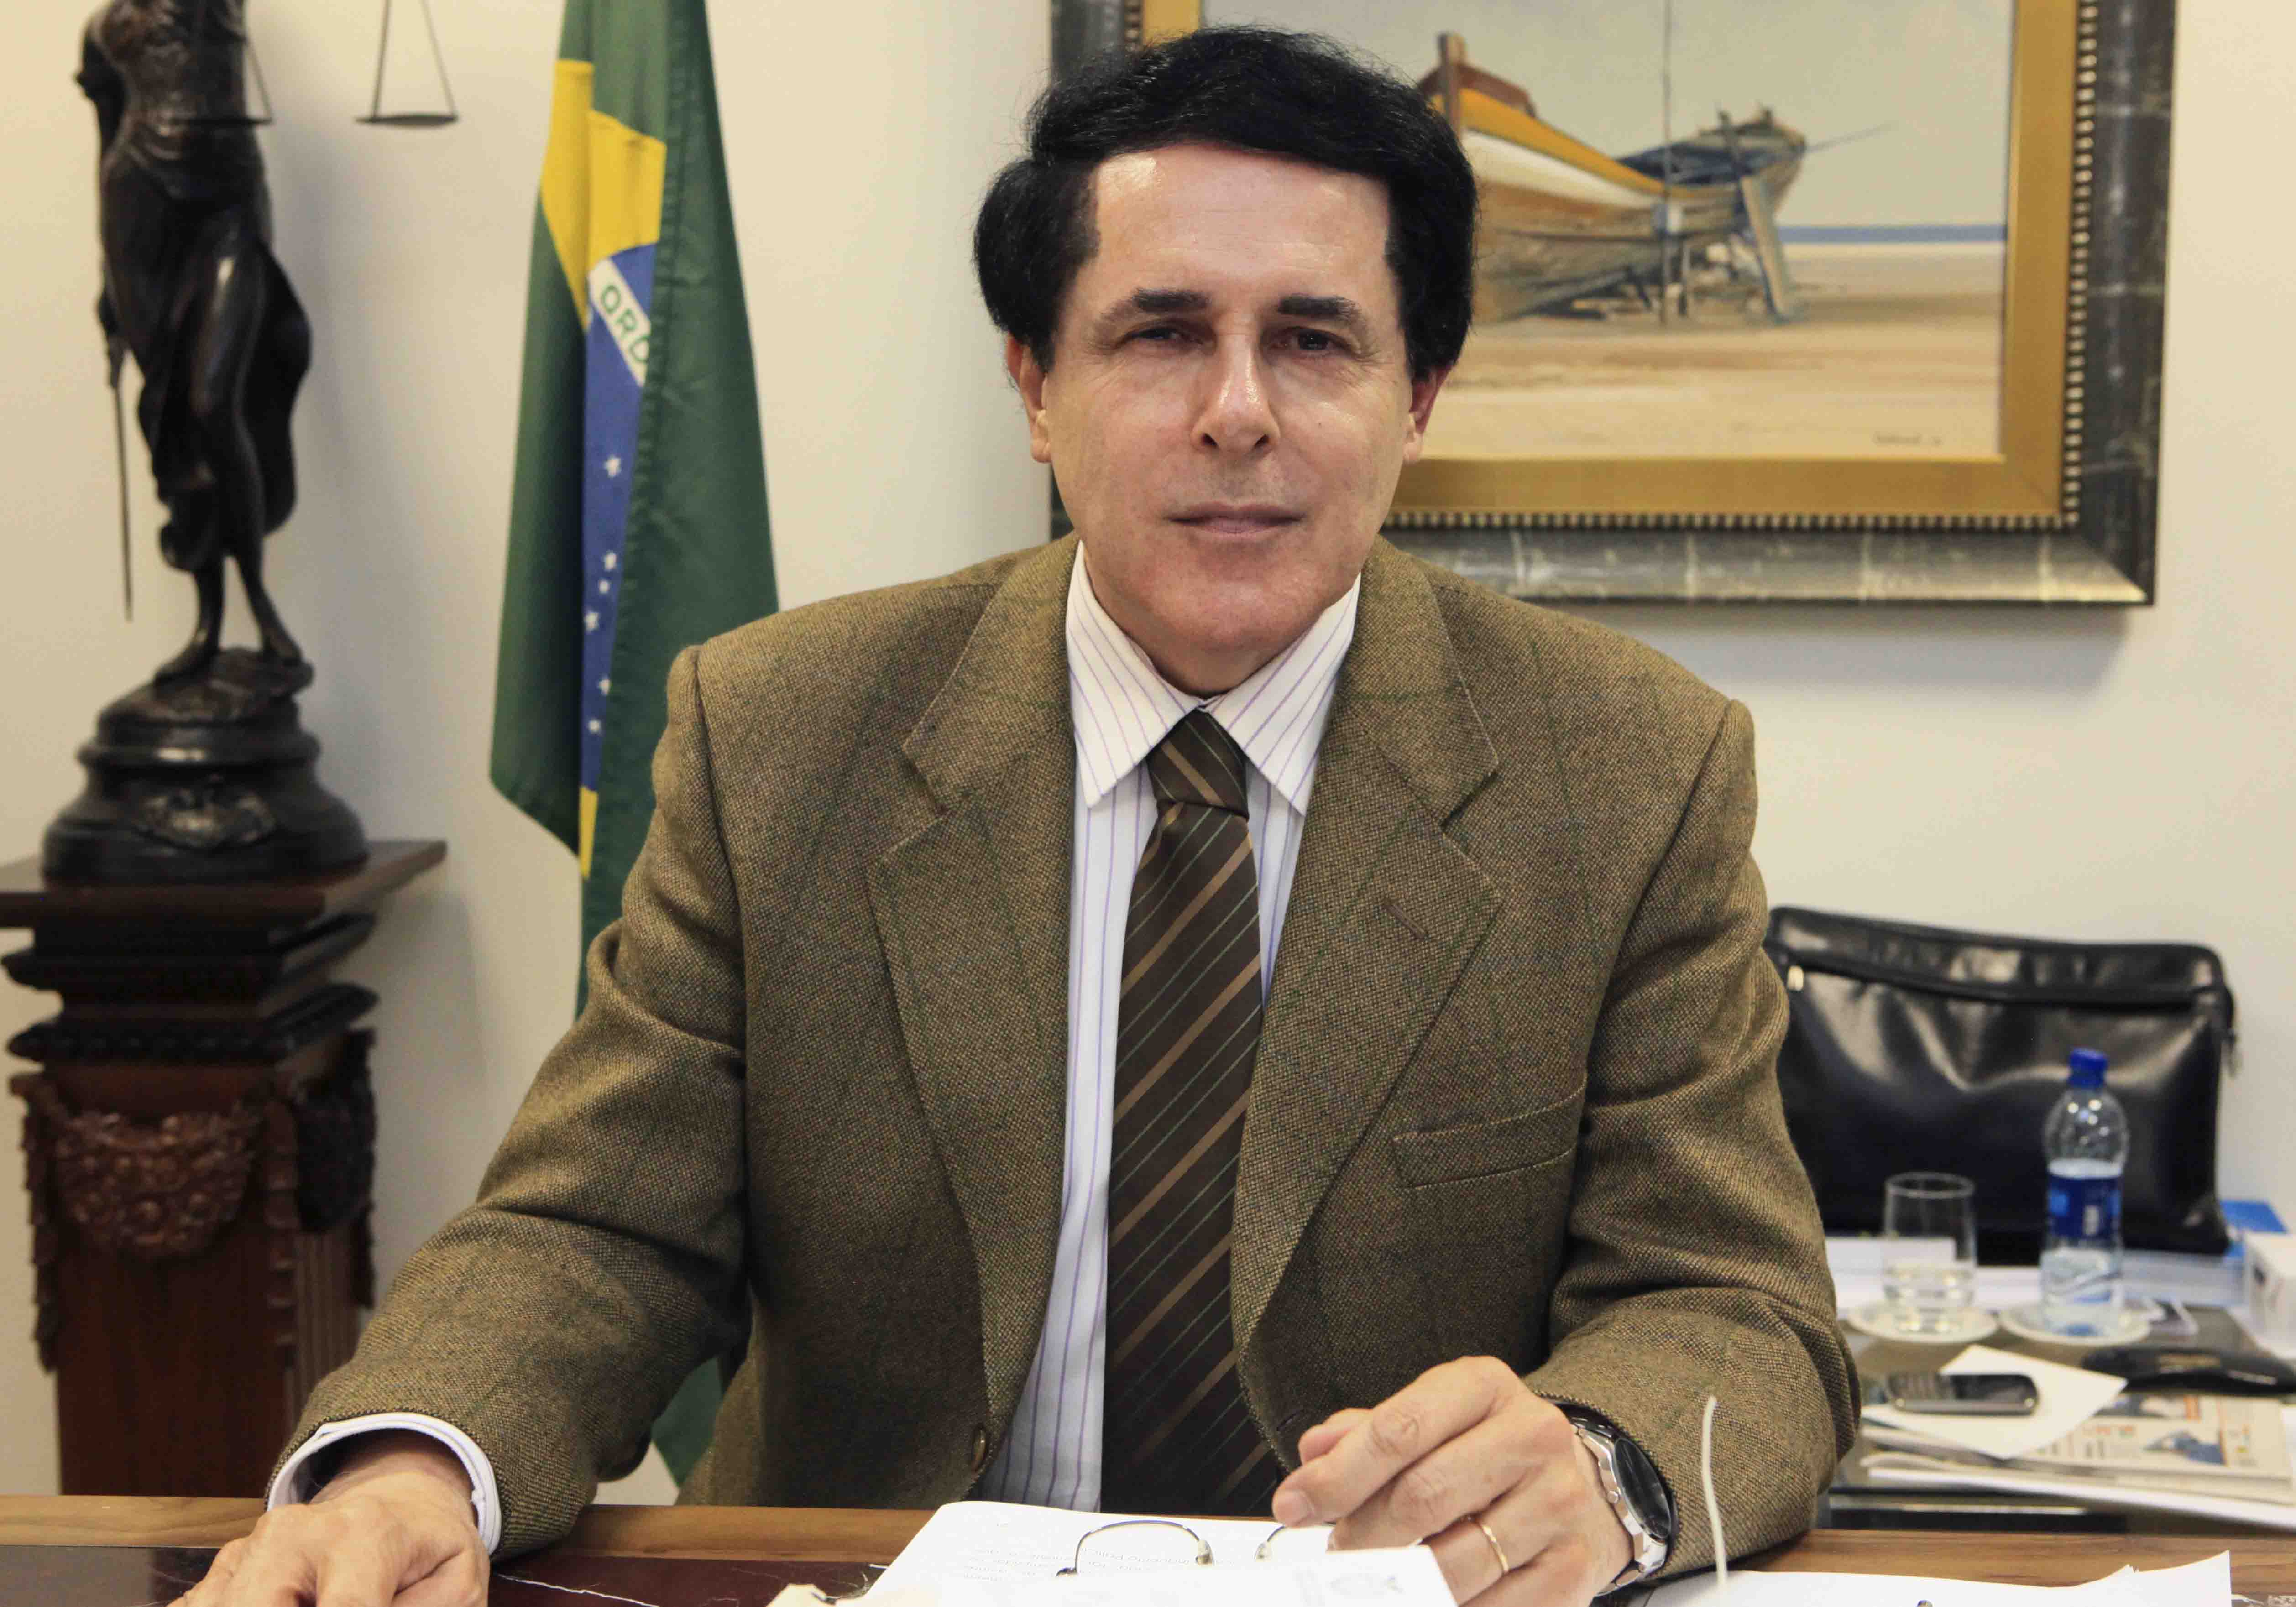 Corregedor-Geral da Justiça expede ofício com informação relevante sobre administração judicial de falências